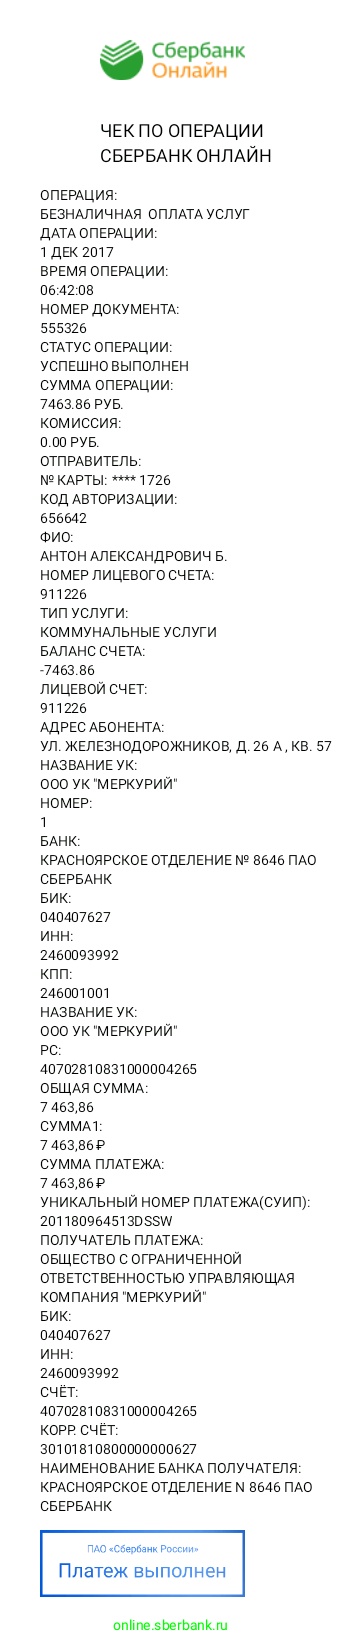 Красноярское отделение n 8646 пао сбербанк г красноярск реквизиты